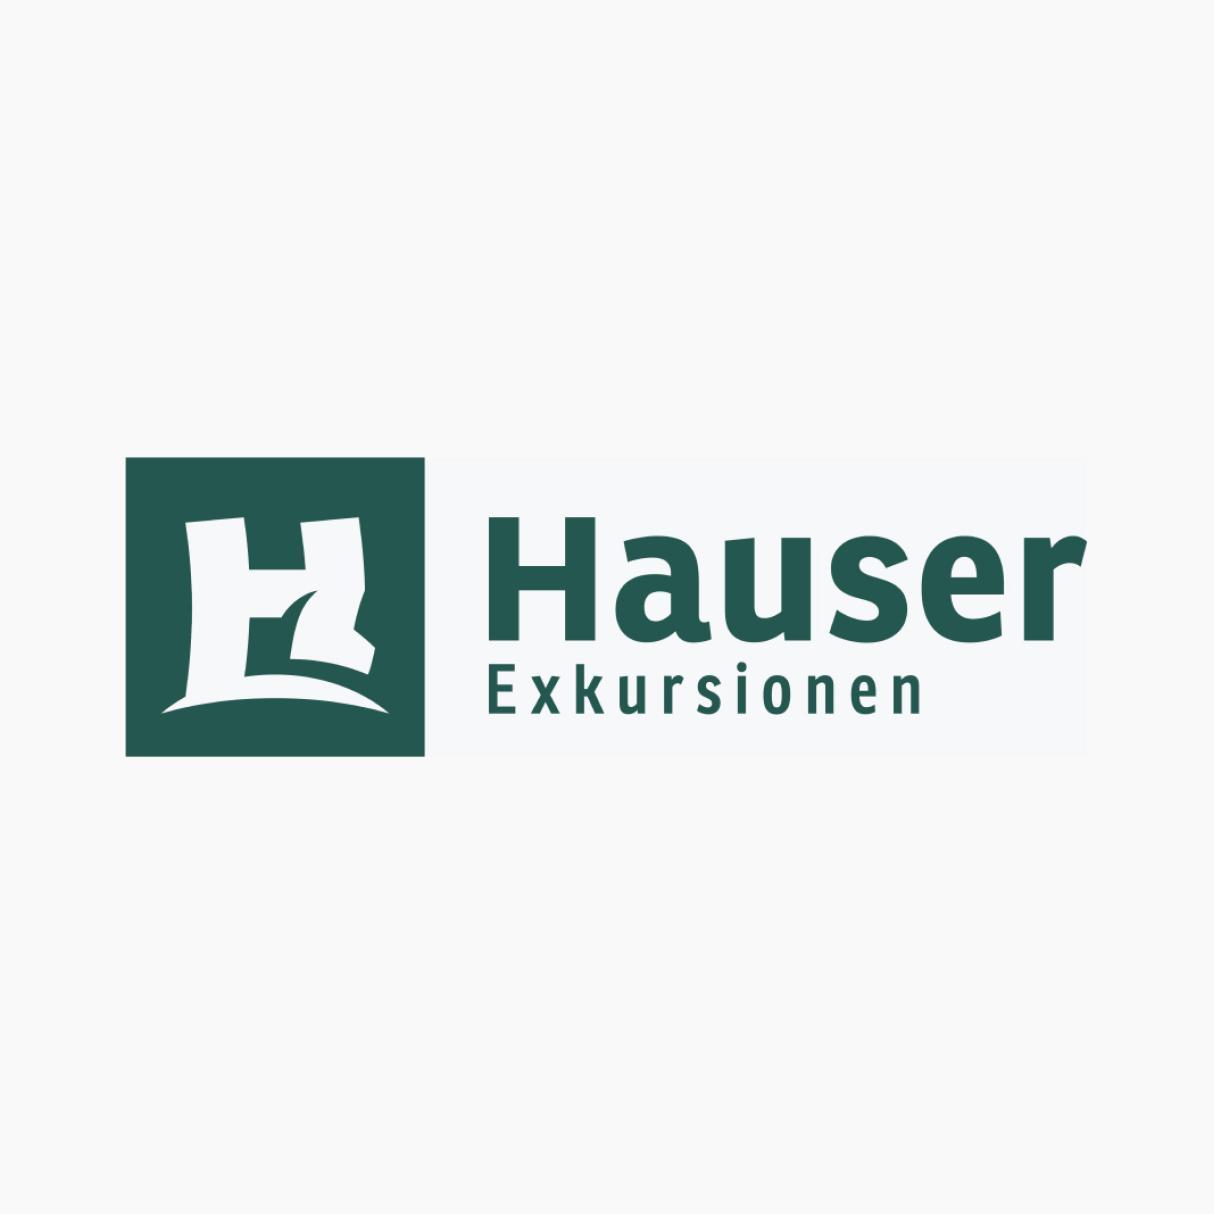 Hauser Exkursionen logo